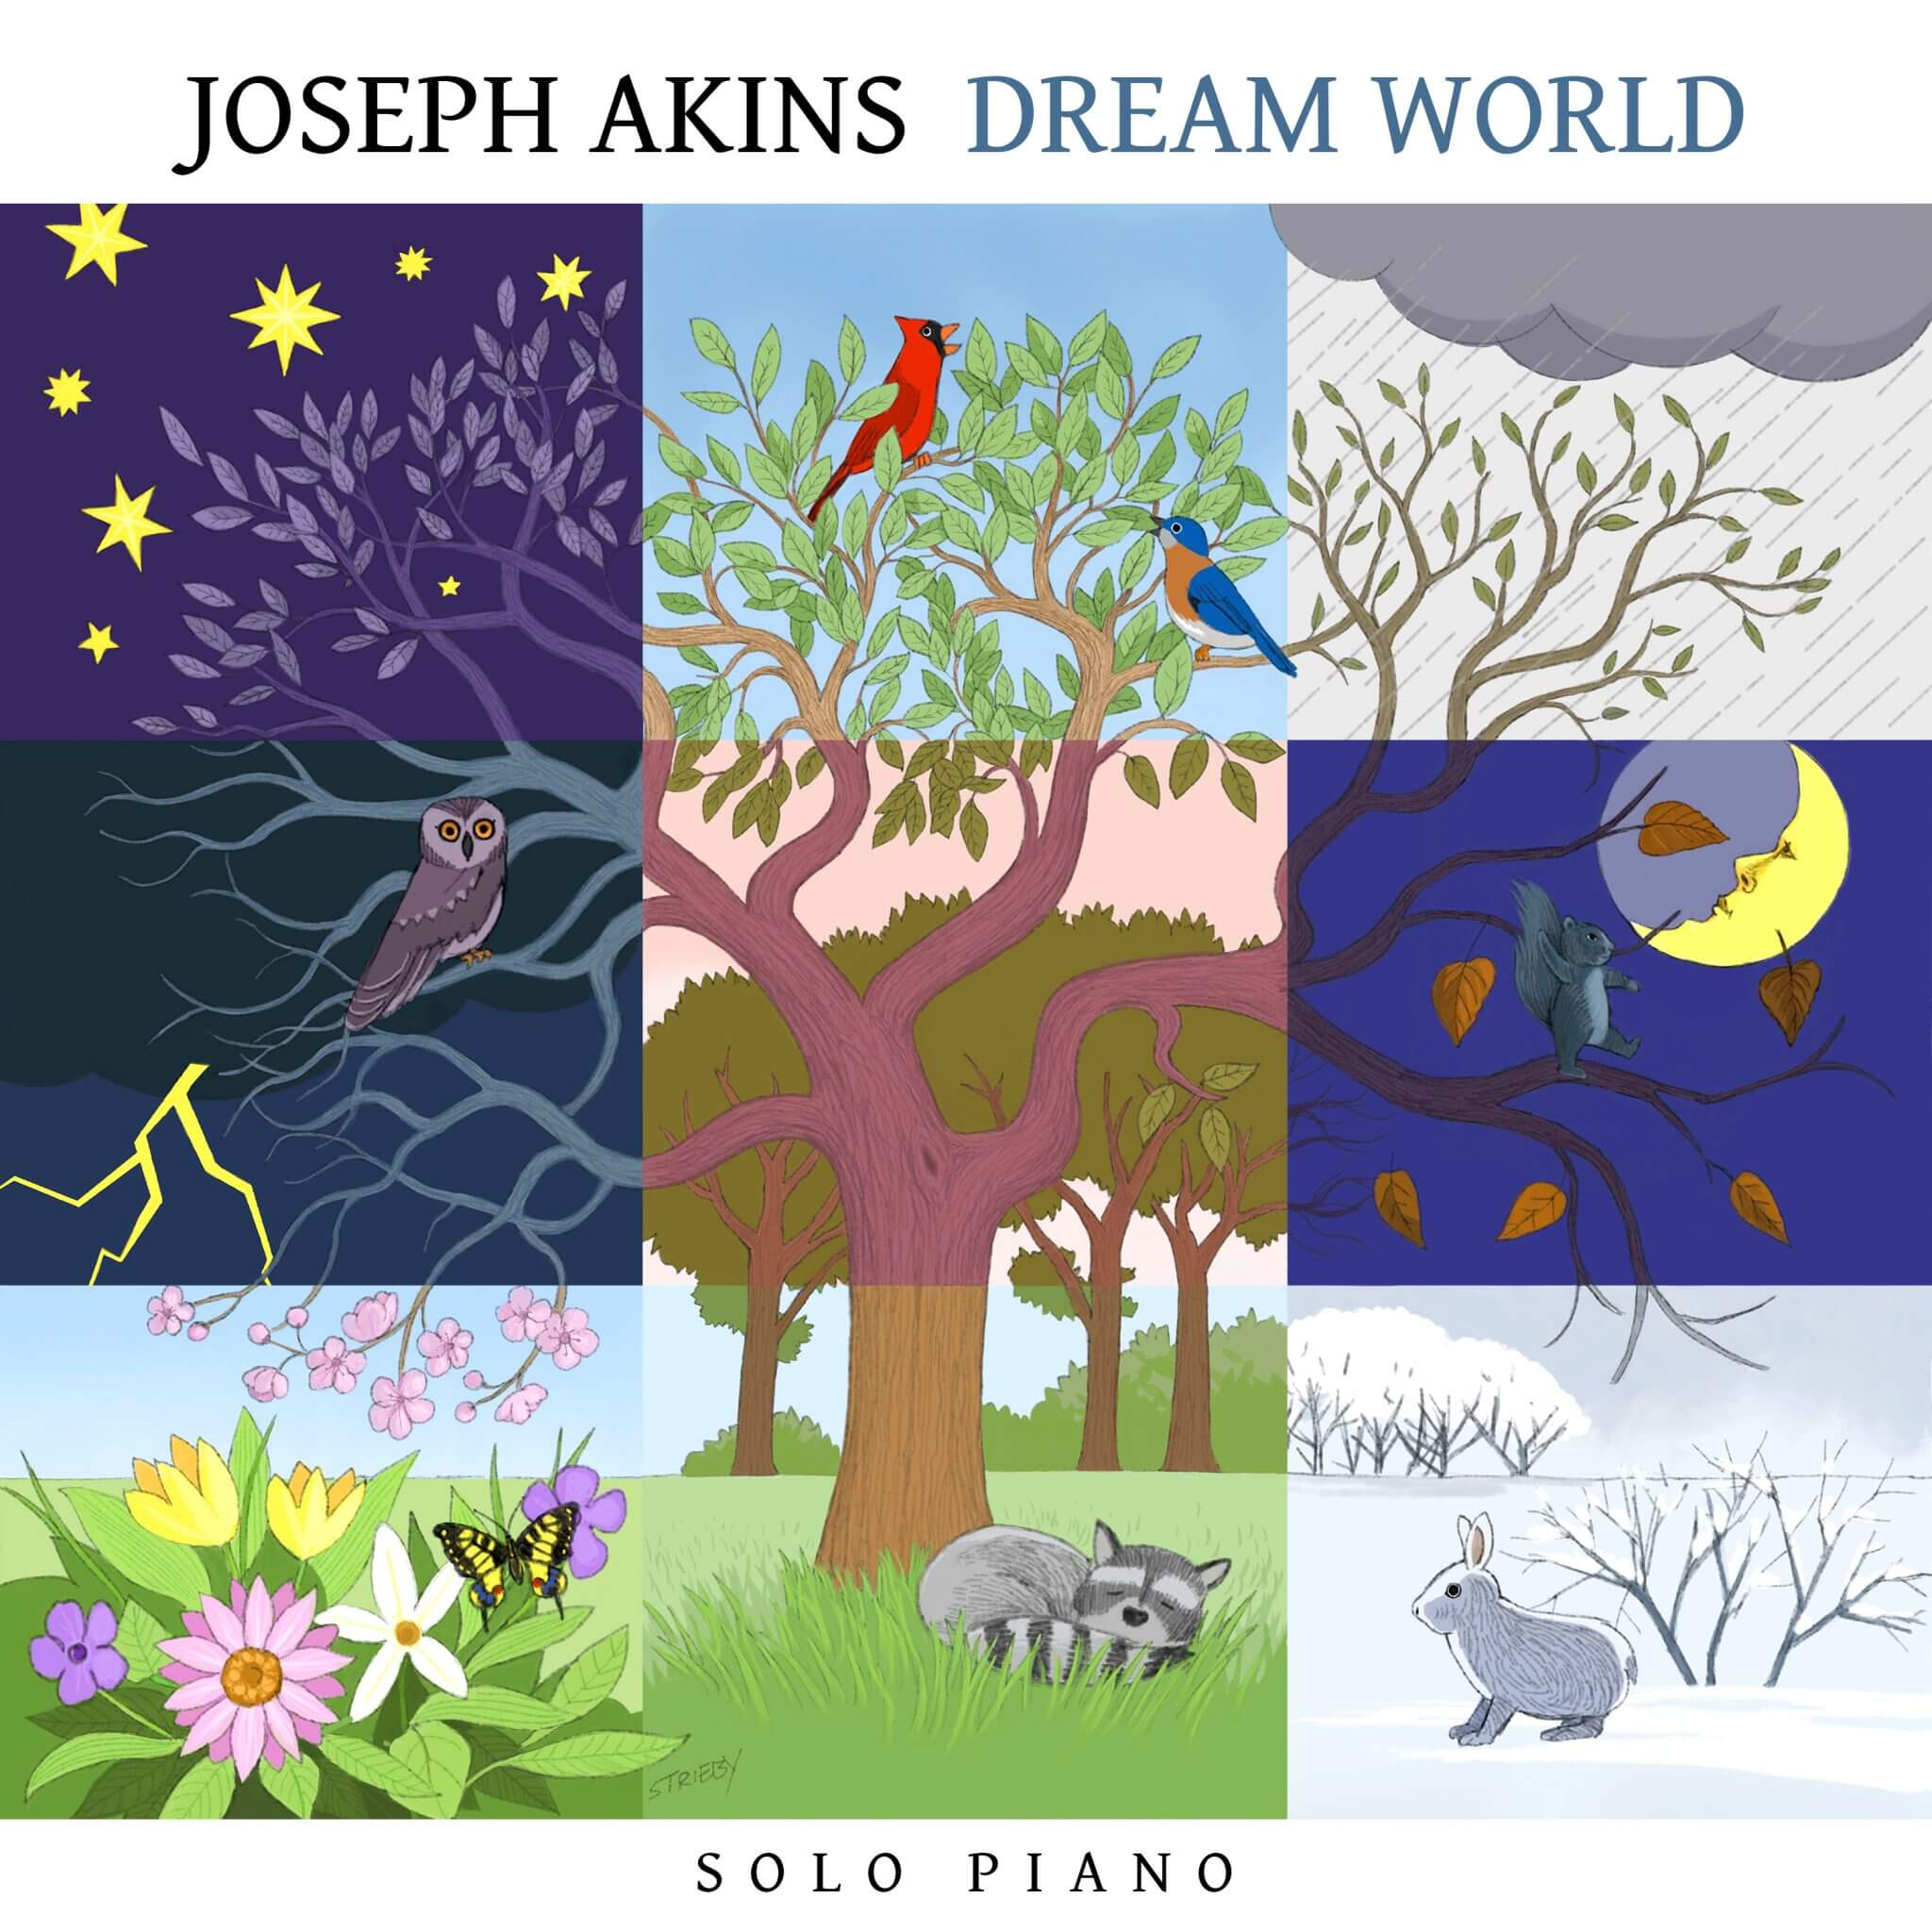 Intimate daring piano dreams Joseph Akins